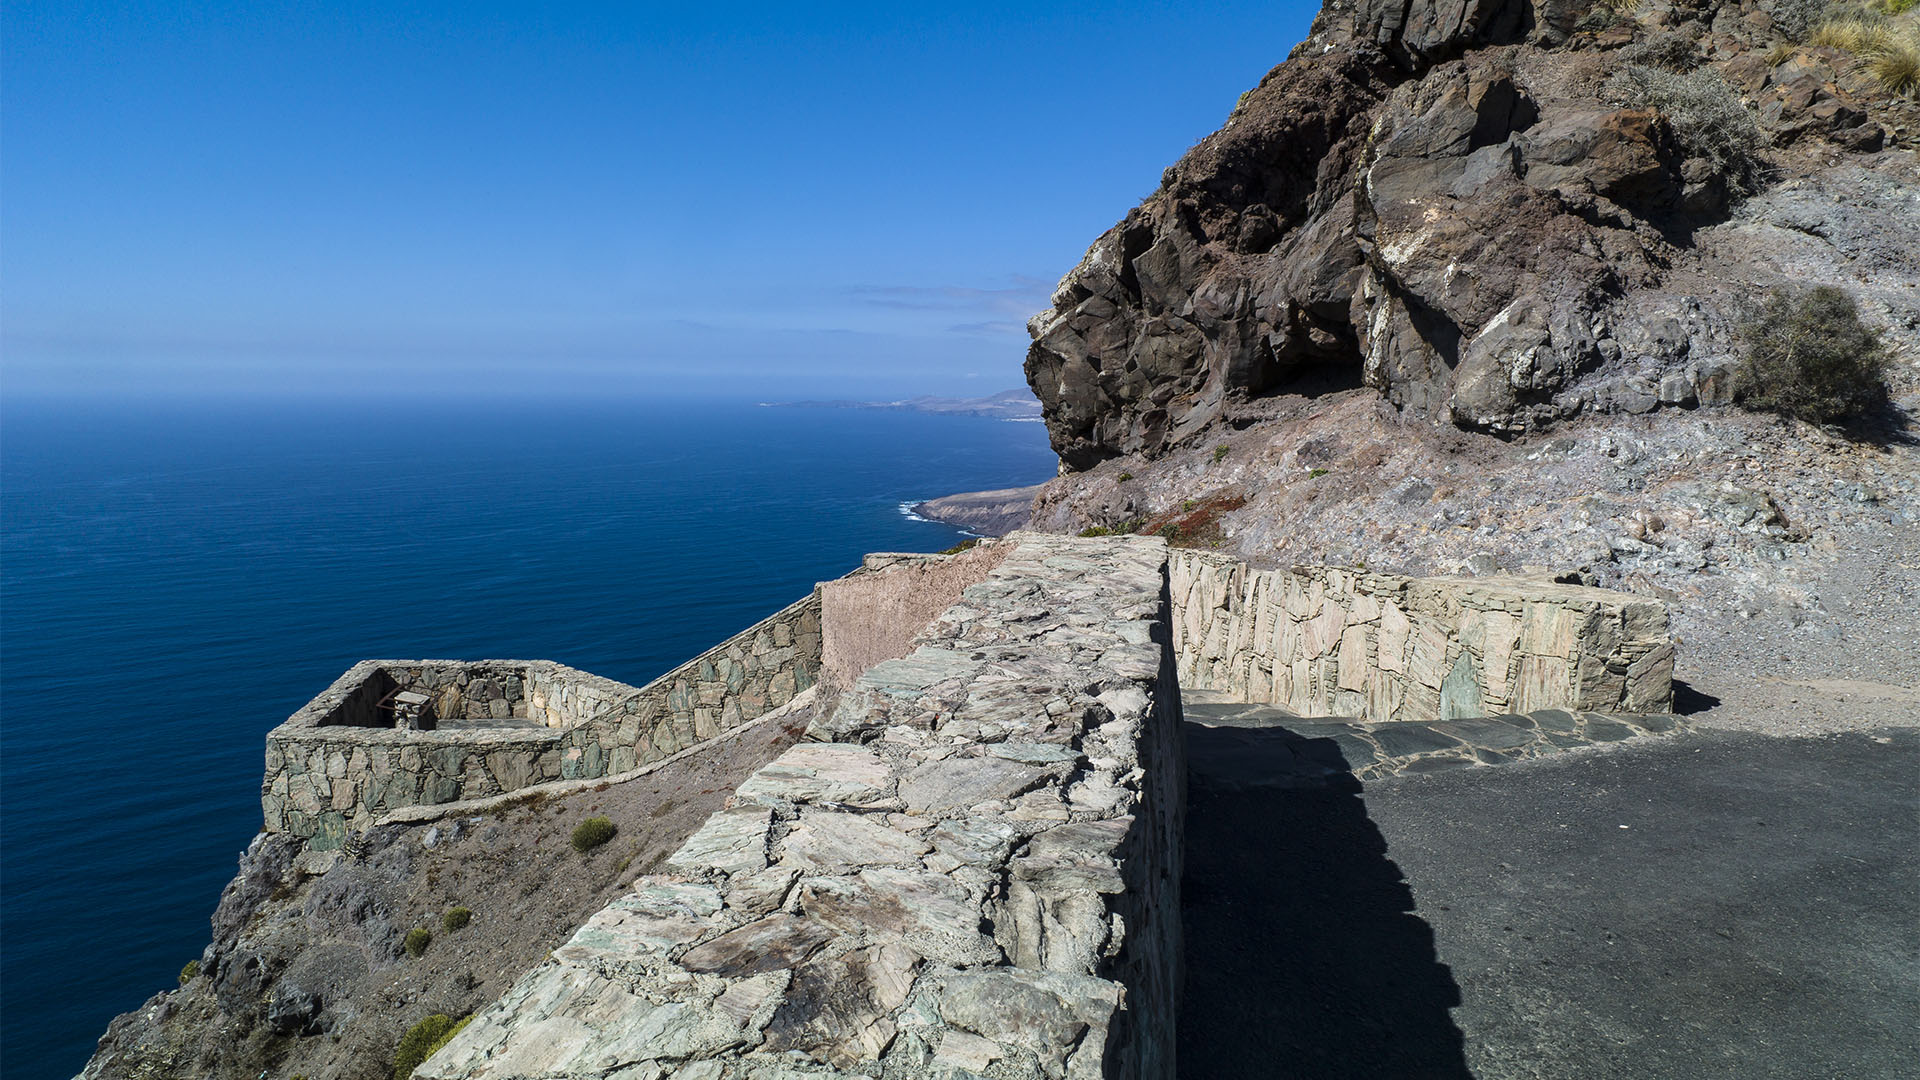 El Balcón, wie er schlicht unter den Canrios heisst. 340 m geht es steil hinab zum Atlantik. Links und rechts liegt die Steilküste zu Füssen. Was für ein Ausblick!